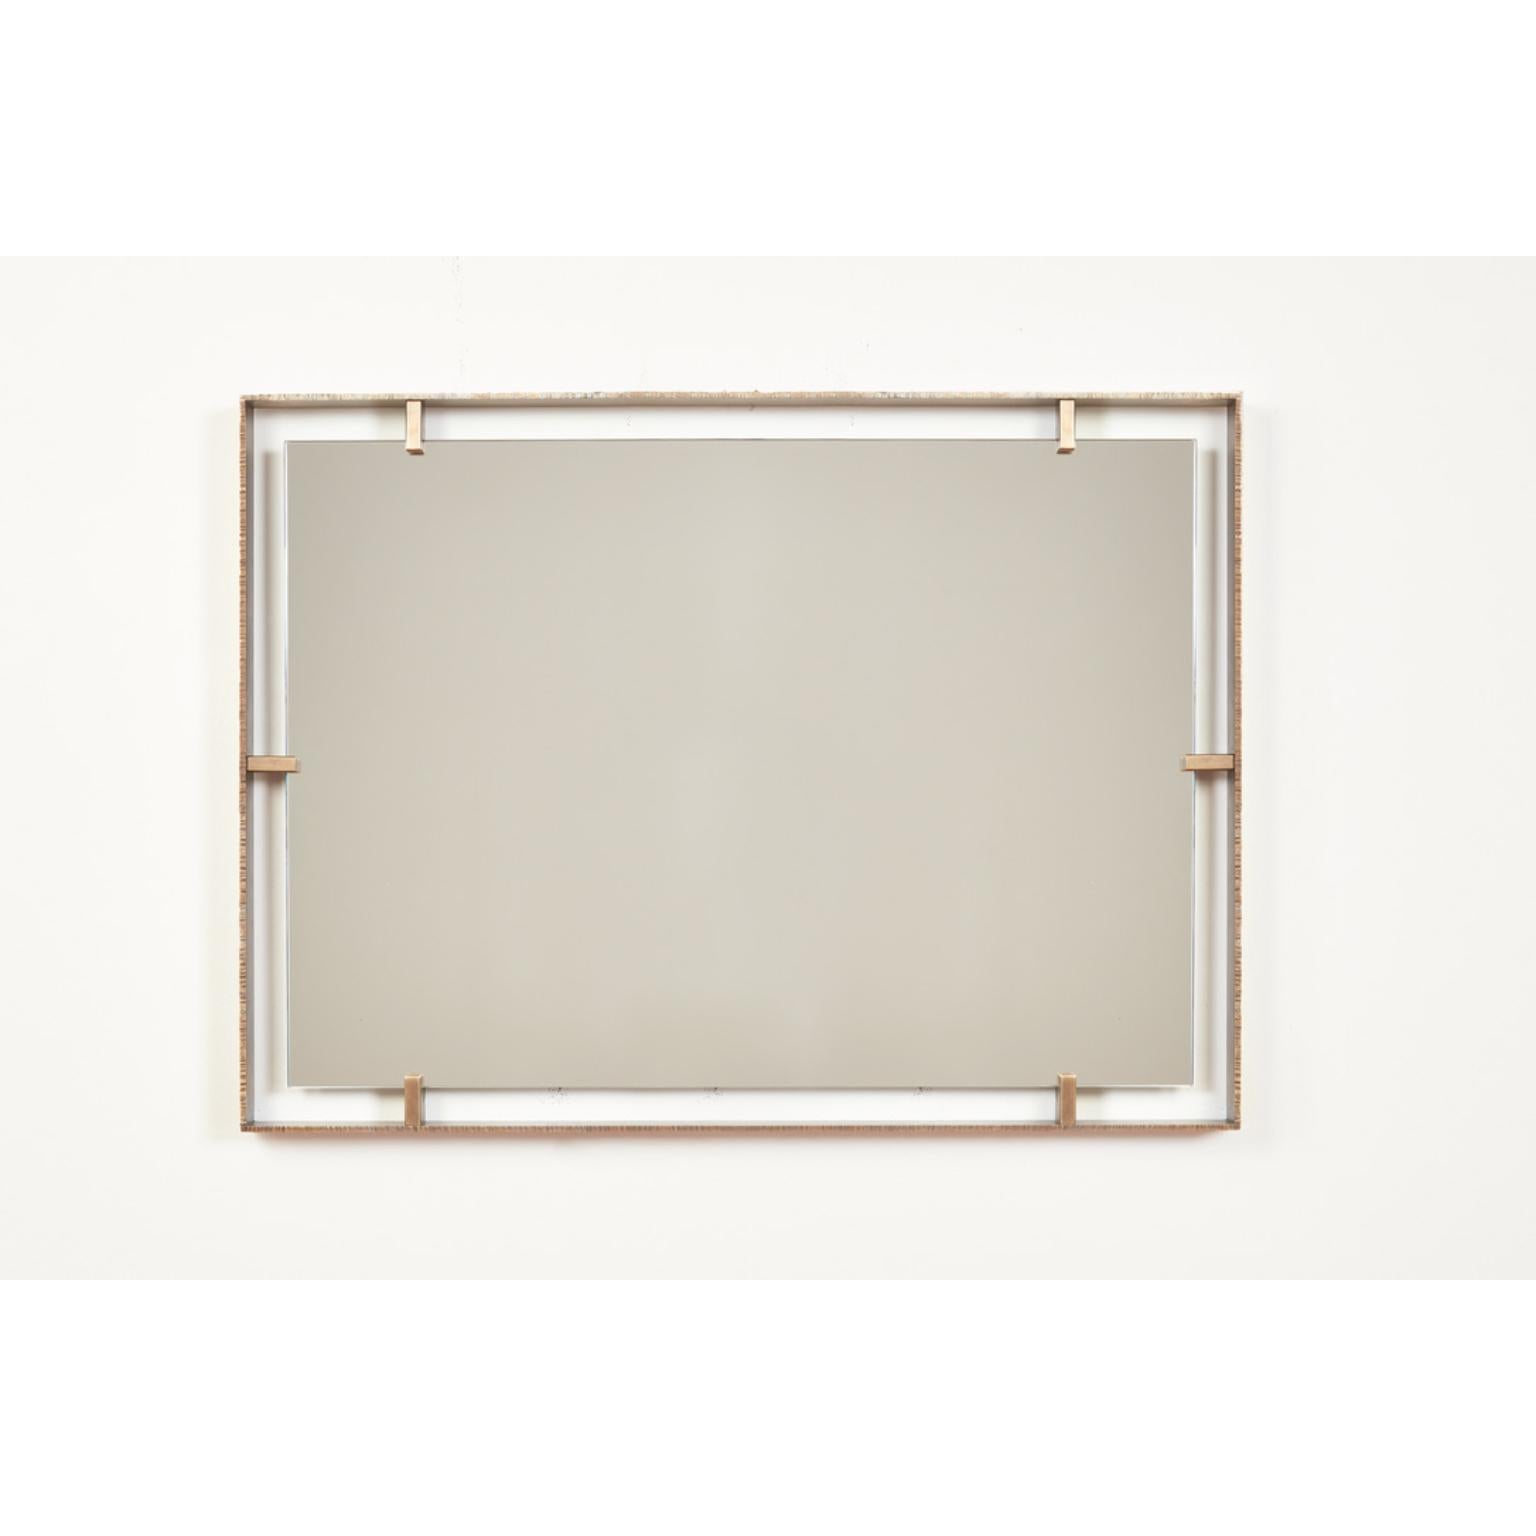 Rechteckiger Spiegel mit geeichter Kante von William Emmerson
Abmessungen: T 5,1 x B 106,7 x H 76,2 cm.
MATERIALIEN: Messing und Glas.
 
Wir präsentieren 